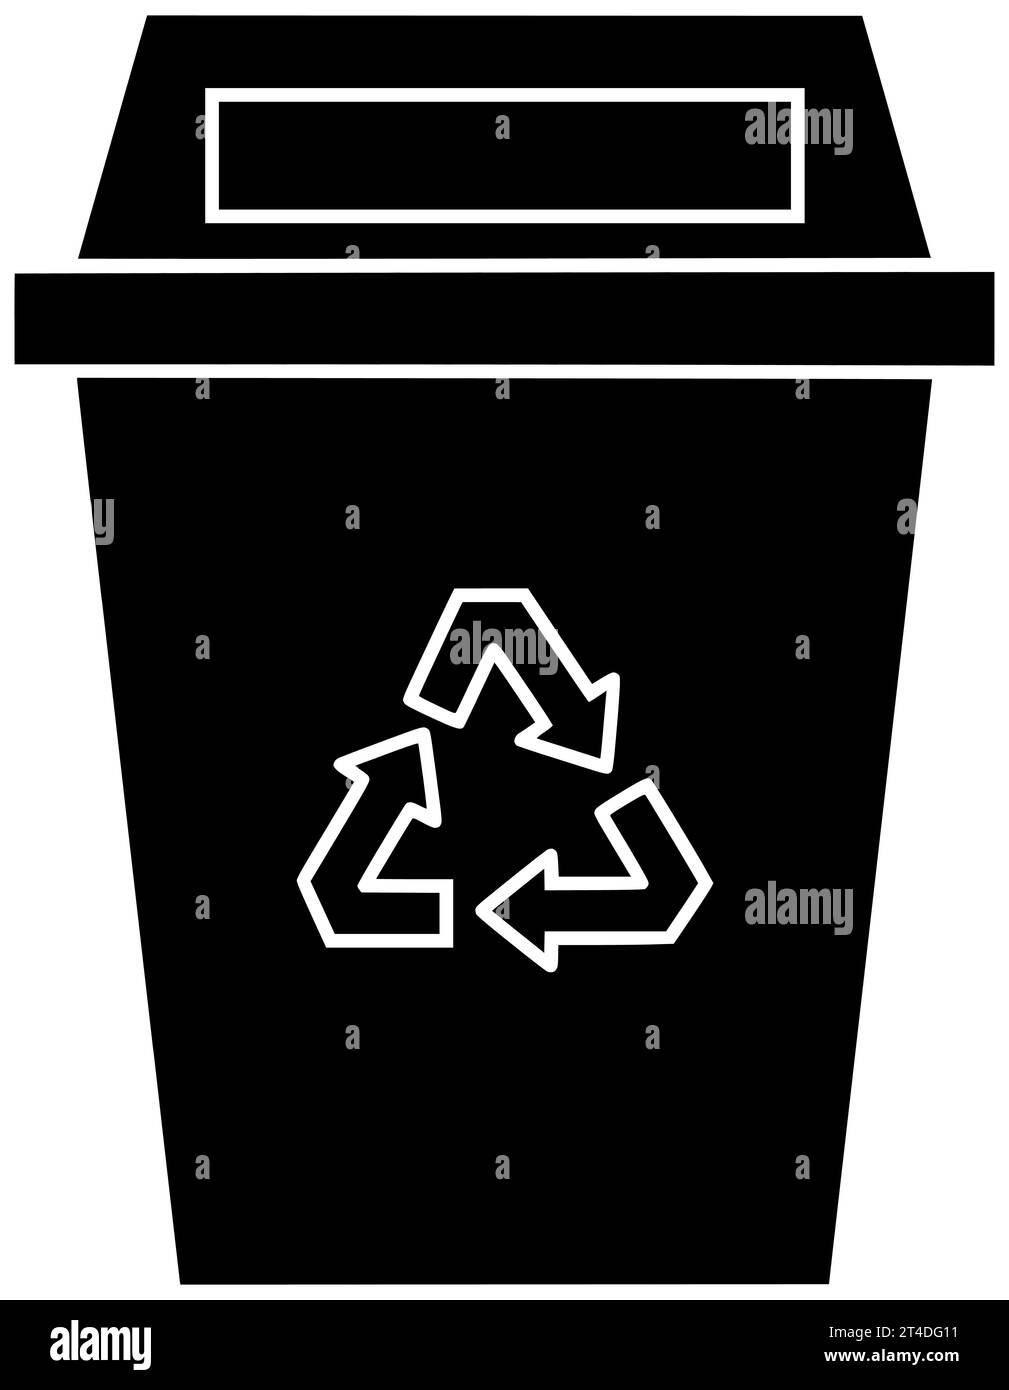 spazzatura nero silhouette spazzatura illustrazione rifiuti icona spazzatura sacchetto di plastica con logo riciclo ecologia contenitore riciclo ambiente spazzatura contenuto inquinante Foto Stock